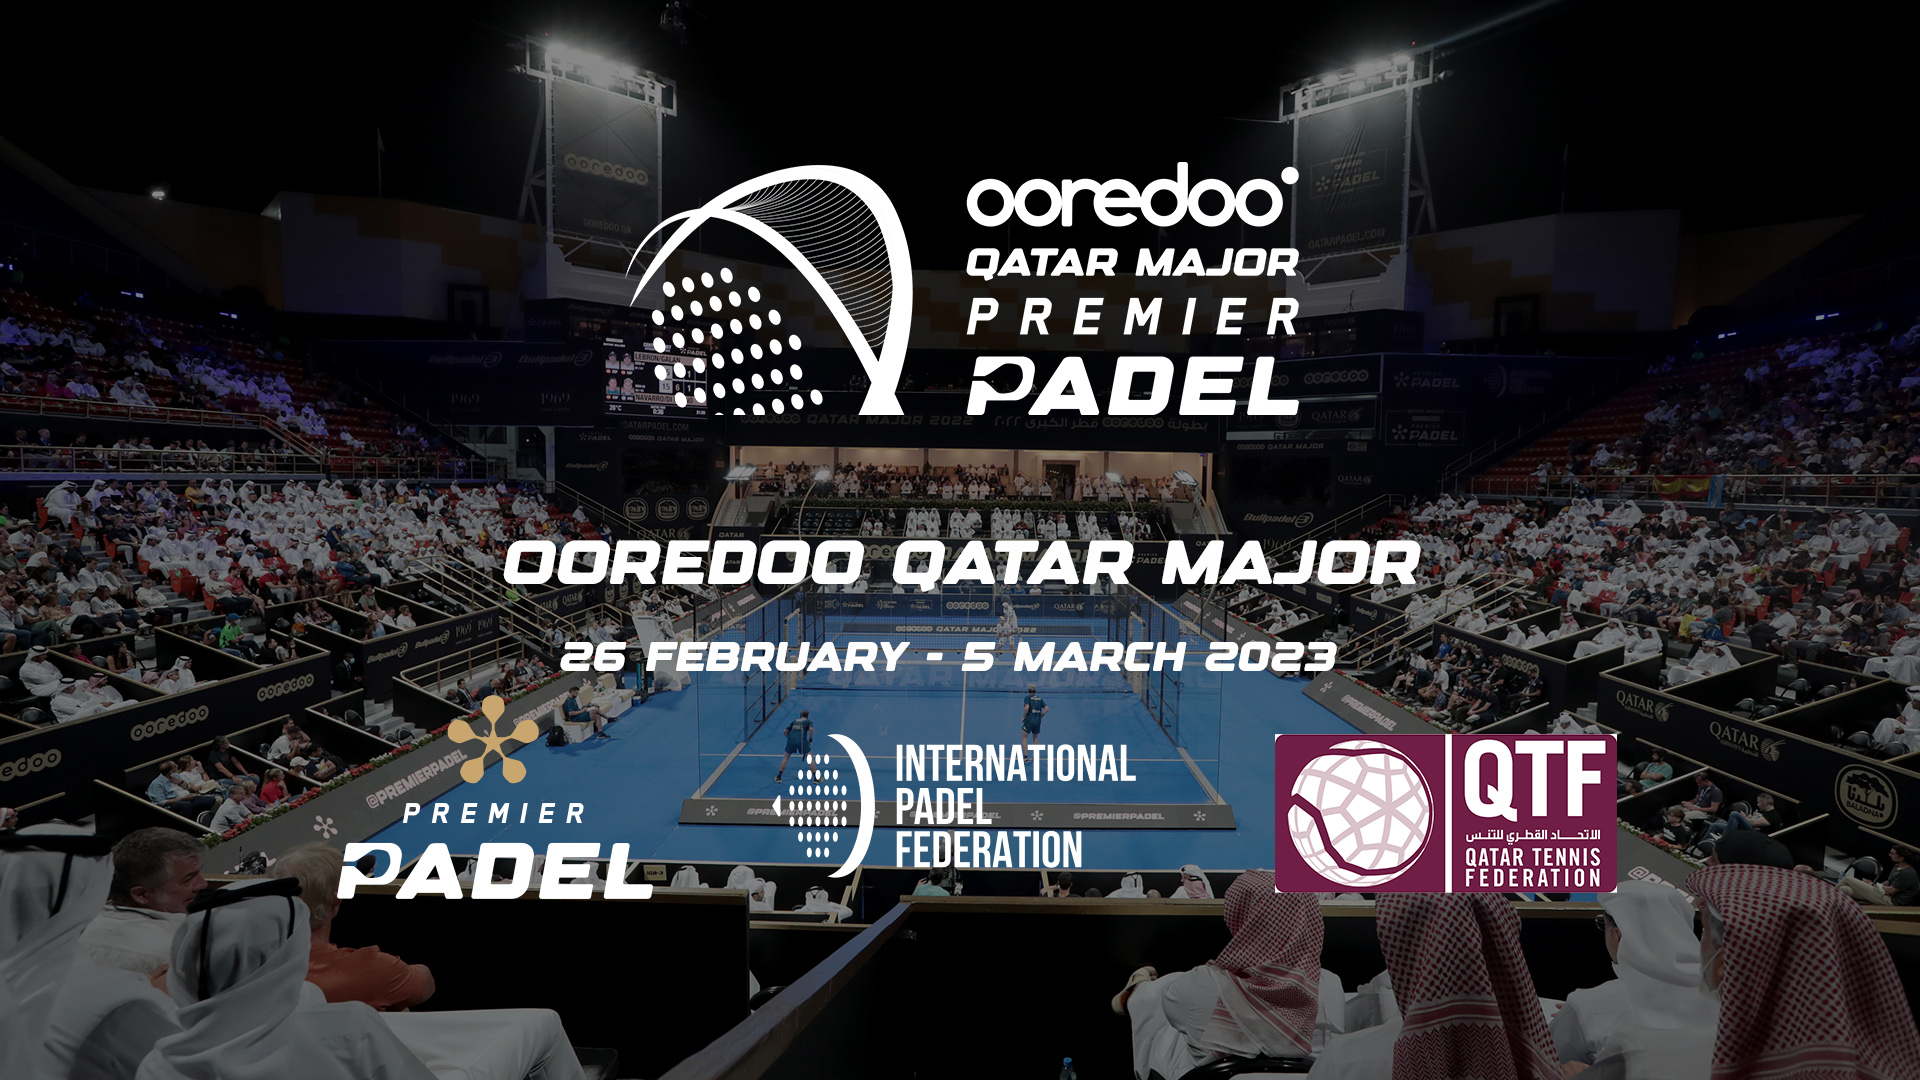 Premier Padel – Ooredoo Qatar Major 2023 i Doha från 26 februari till 5 mars!